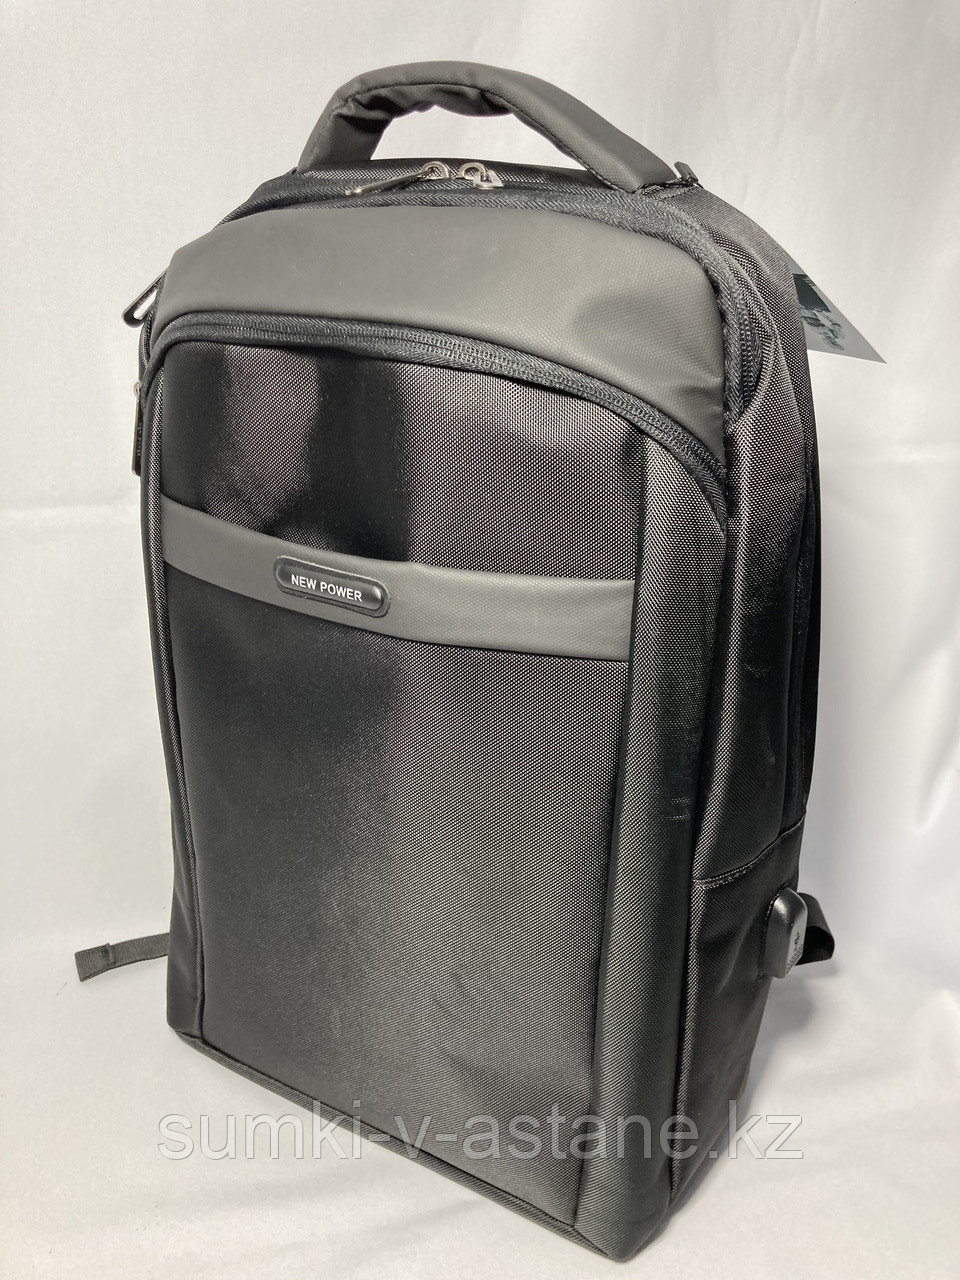 Мужской городской рюкзак "New Power", с отделом под ноутбук (высота 45 см, ширина 30 см, глубина 15 см)